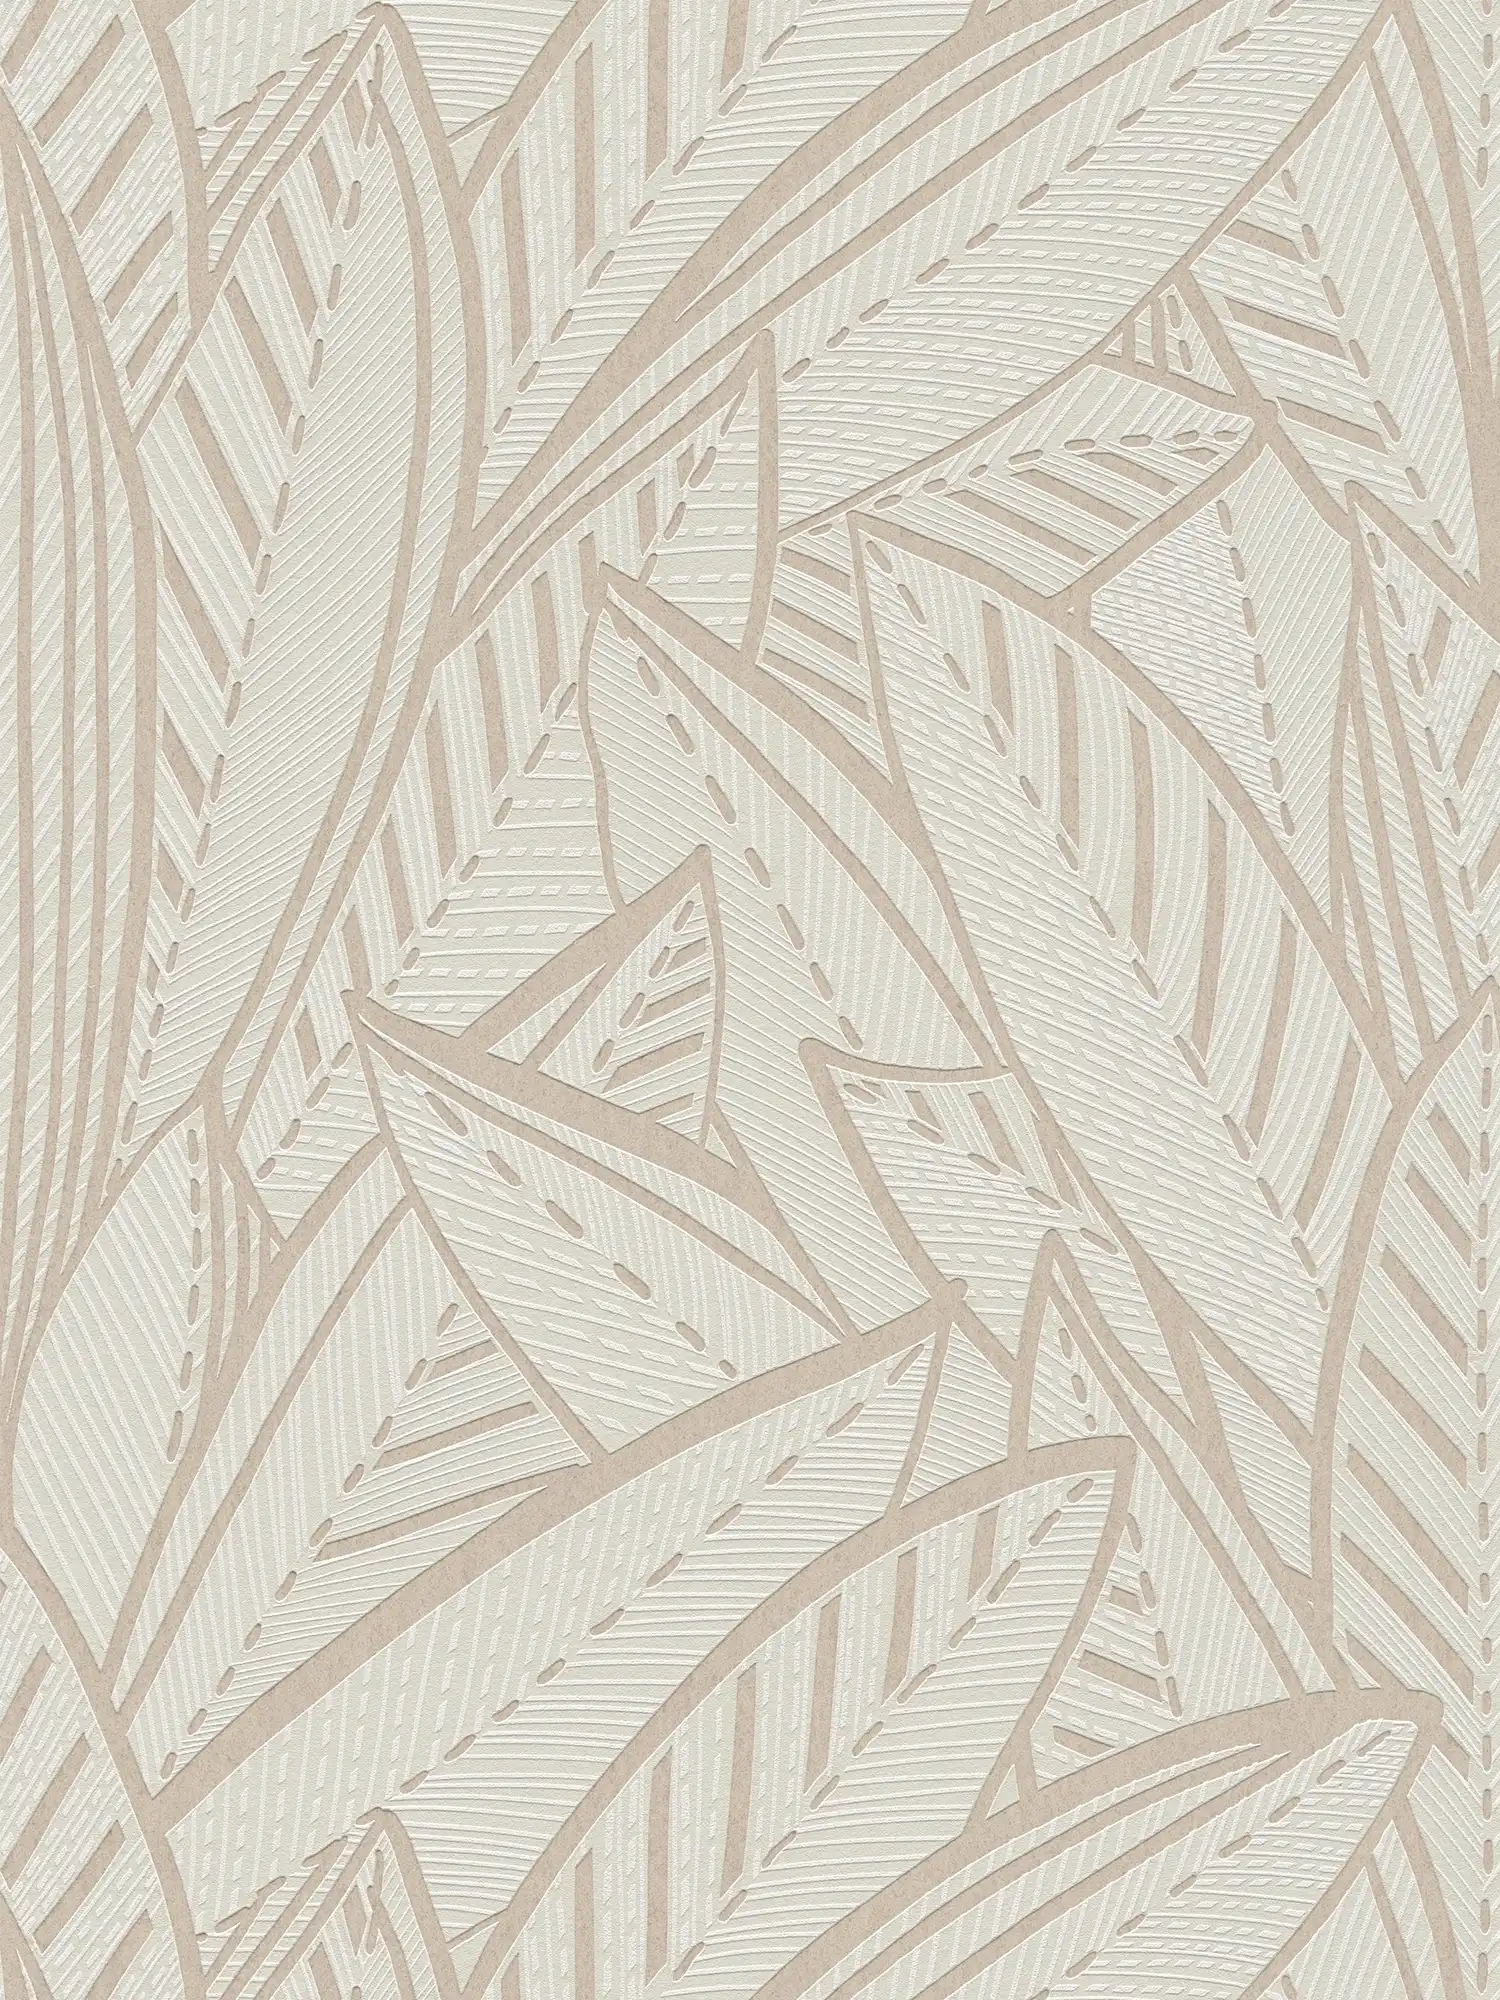         Jungle vliesbehang met palmbladeren en lichtglanseffecten - wit, grijs
    